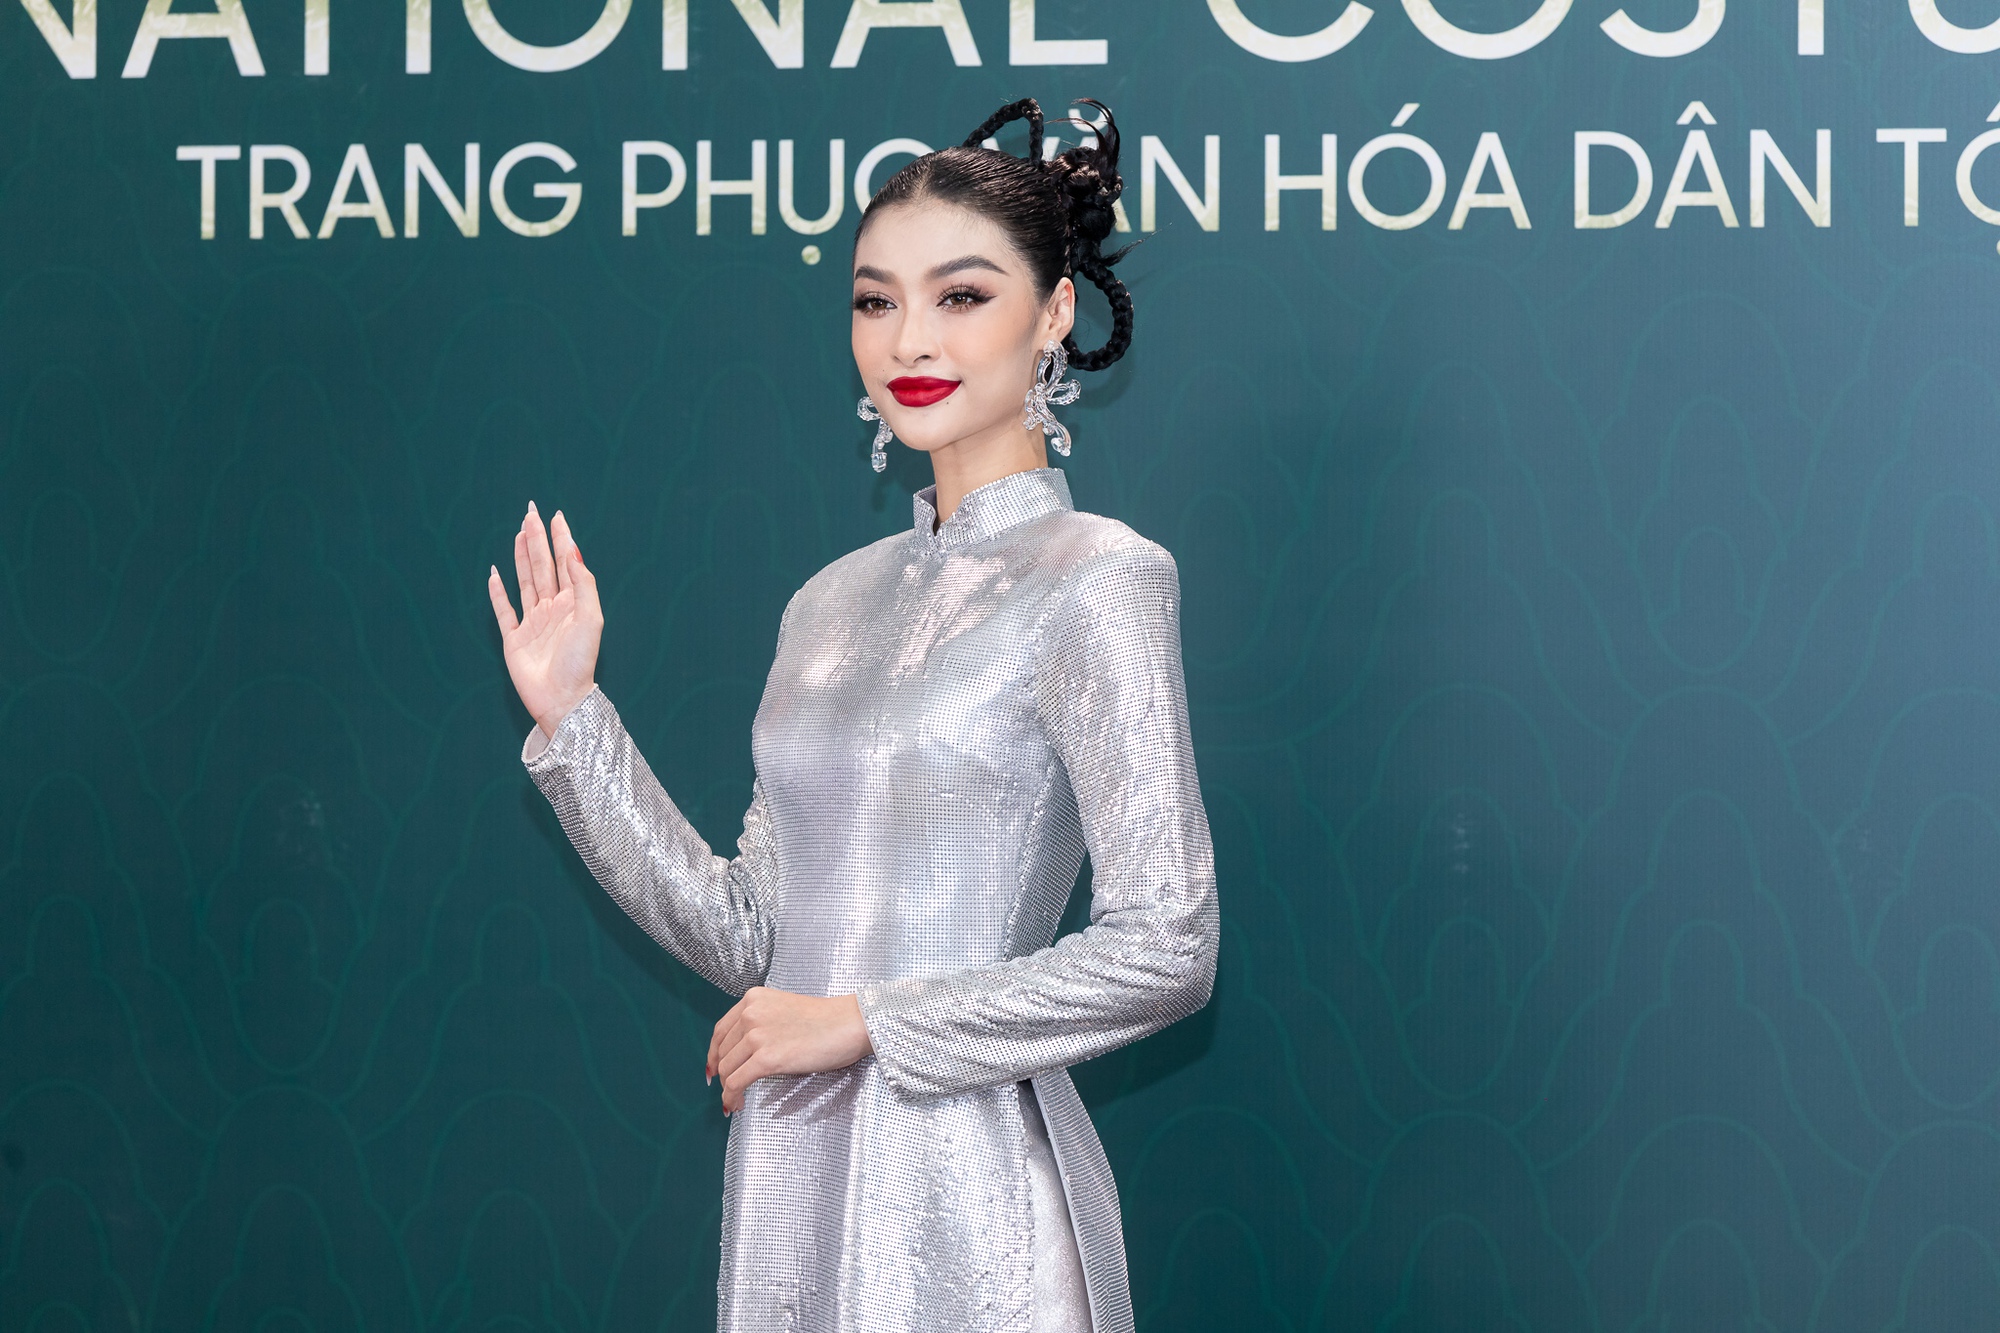 Hoa hậu Thùy Tiên - Mai Phương cùng dàn mỹ nhân quyền lực trên thảm đỏ Hoa hậu Hòa bình Việt Nam  - Ảnh 6.